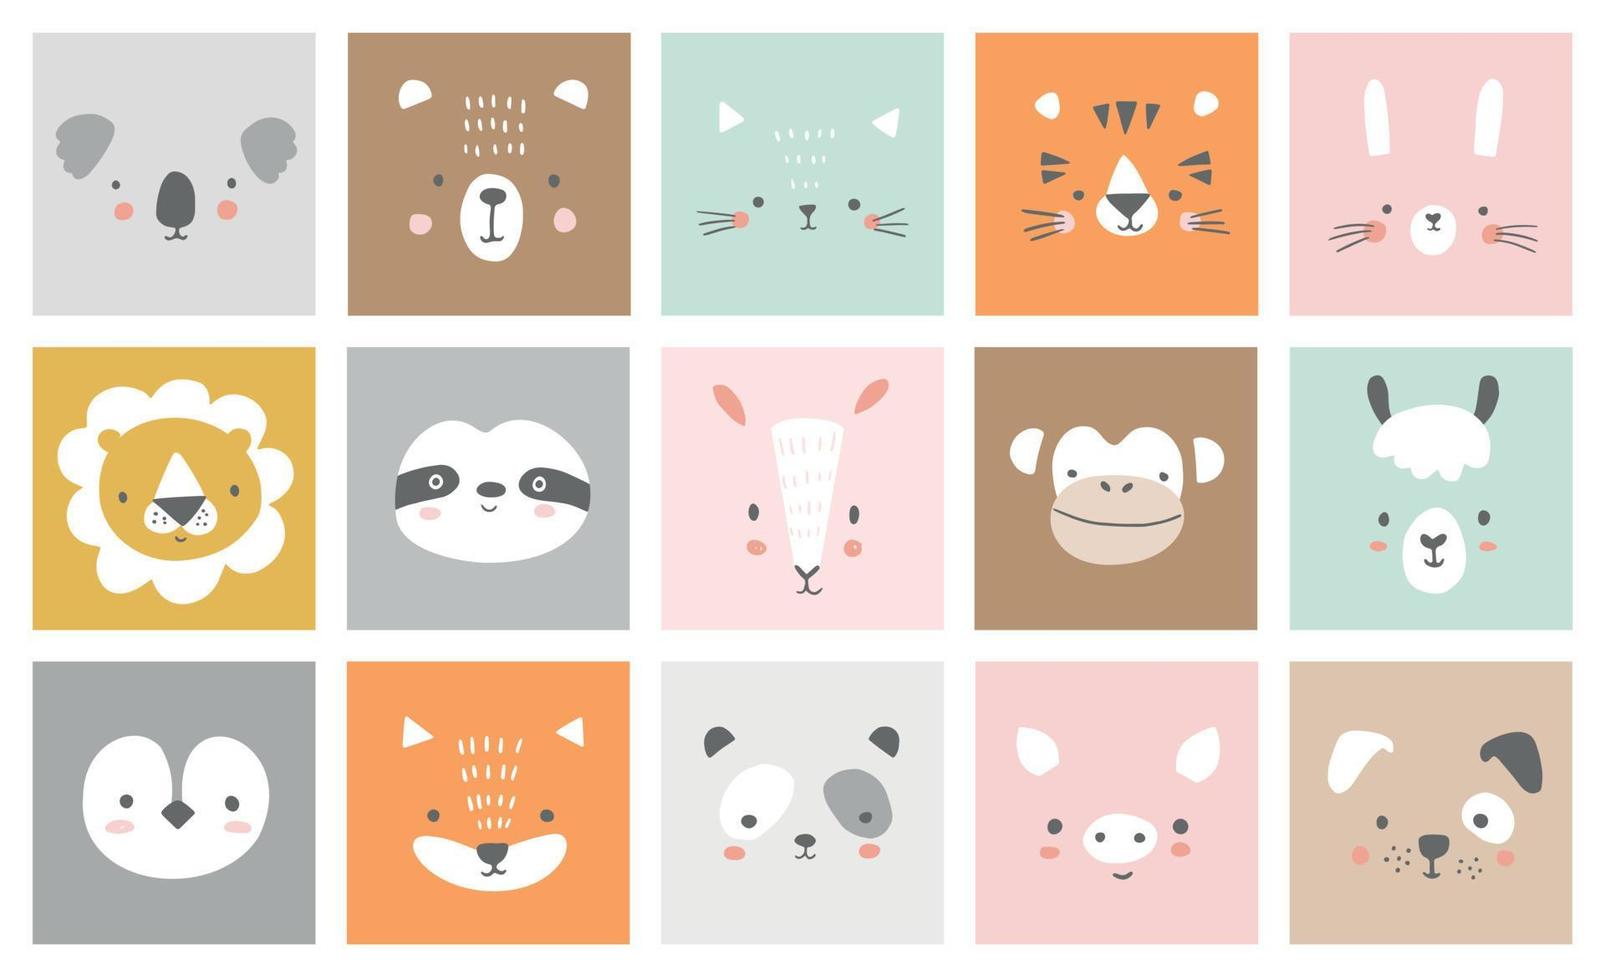 söta enkla djurporträtt - hare, tiger, björn, sengångare, katt, koala, räv, alpacka, lamadjur, panda, pingvin, lejon, hund, get, gris. design för babykläder. handritade karaktärer. vektor illustration.